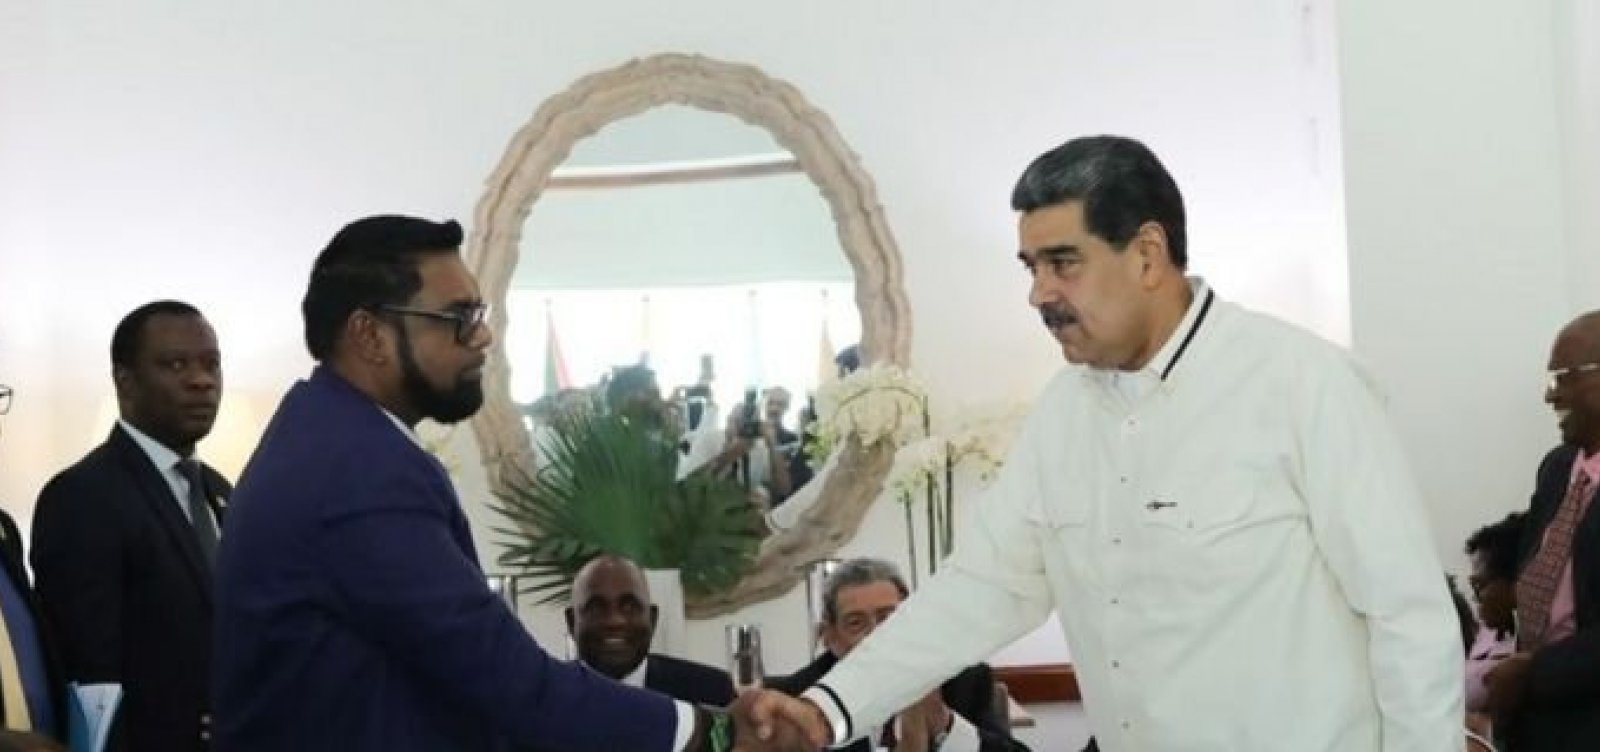 Essequibo: acordo fechado entre Venezuela e Guiana proíbe uso da força e prevê reunião no Brasil